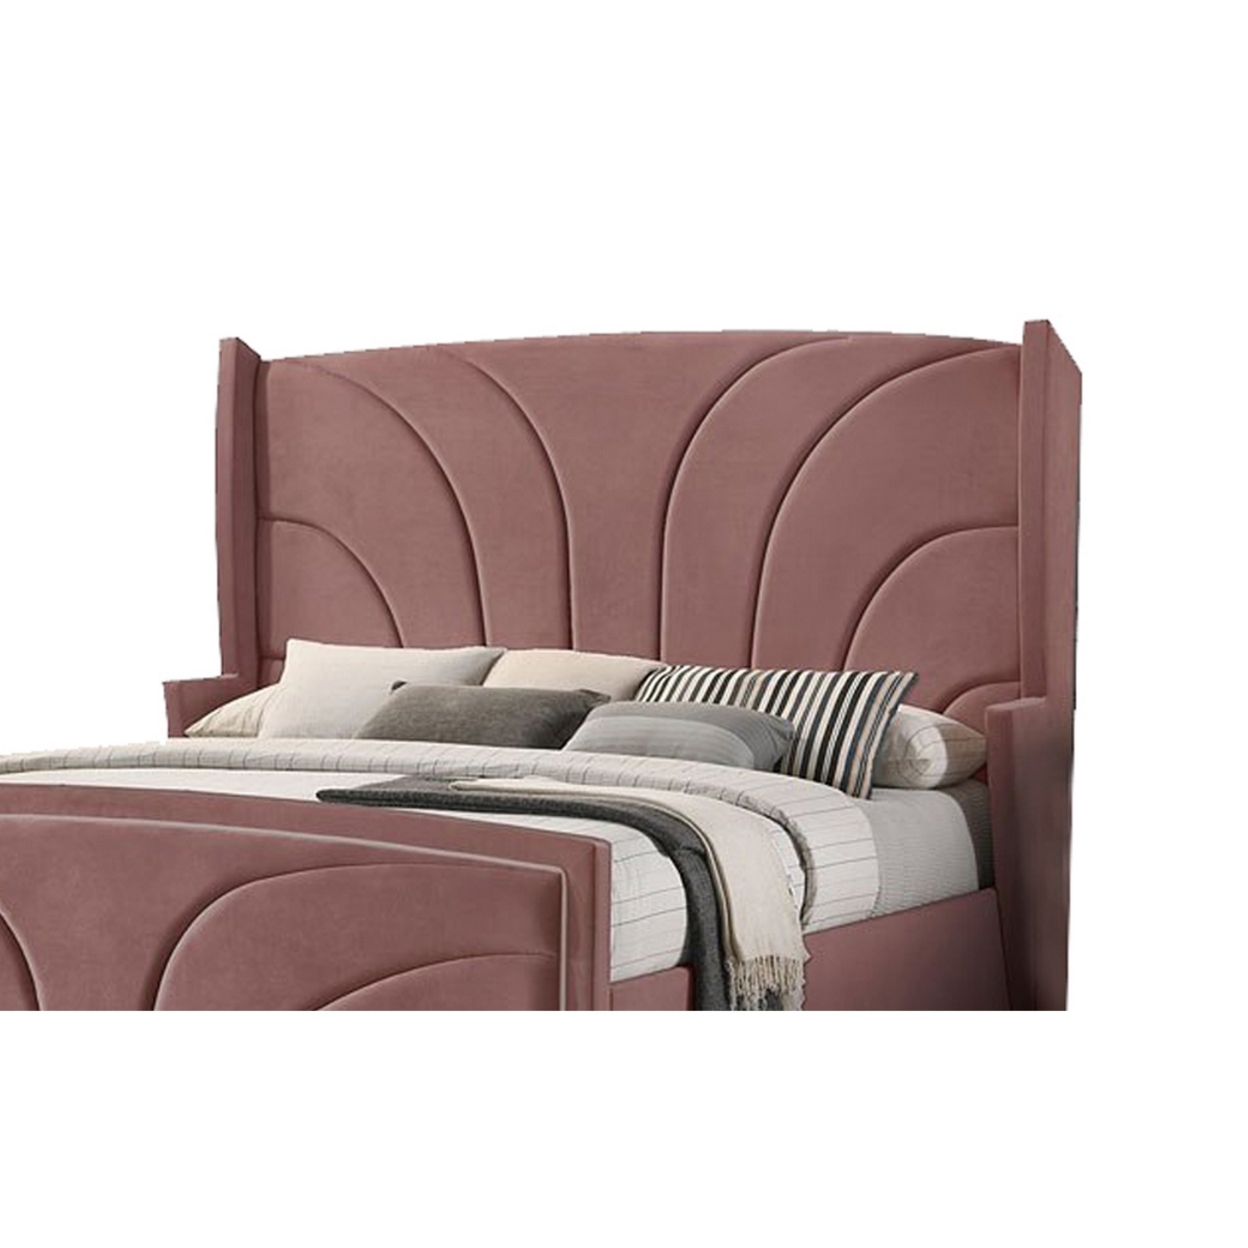 Kerith Modern Wood Queen Size Bed, Wingback Frame, Pink Velvet, Chrome Legs- Saltoro Sherpi